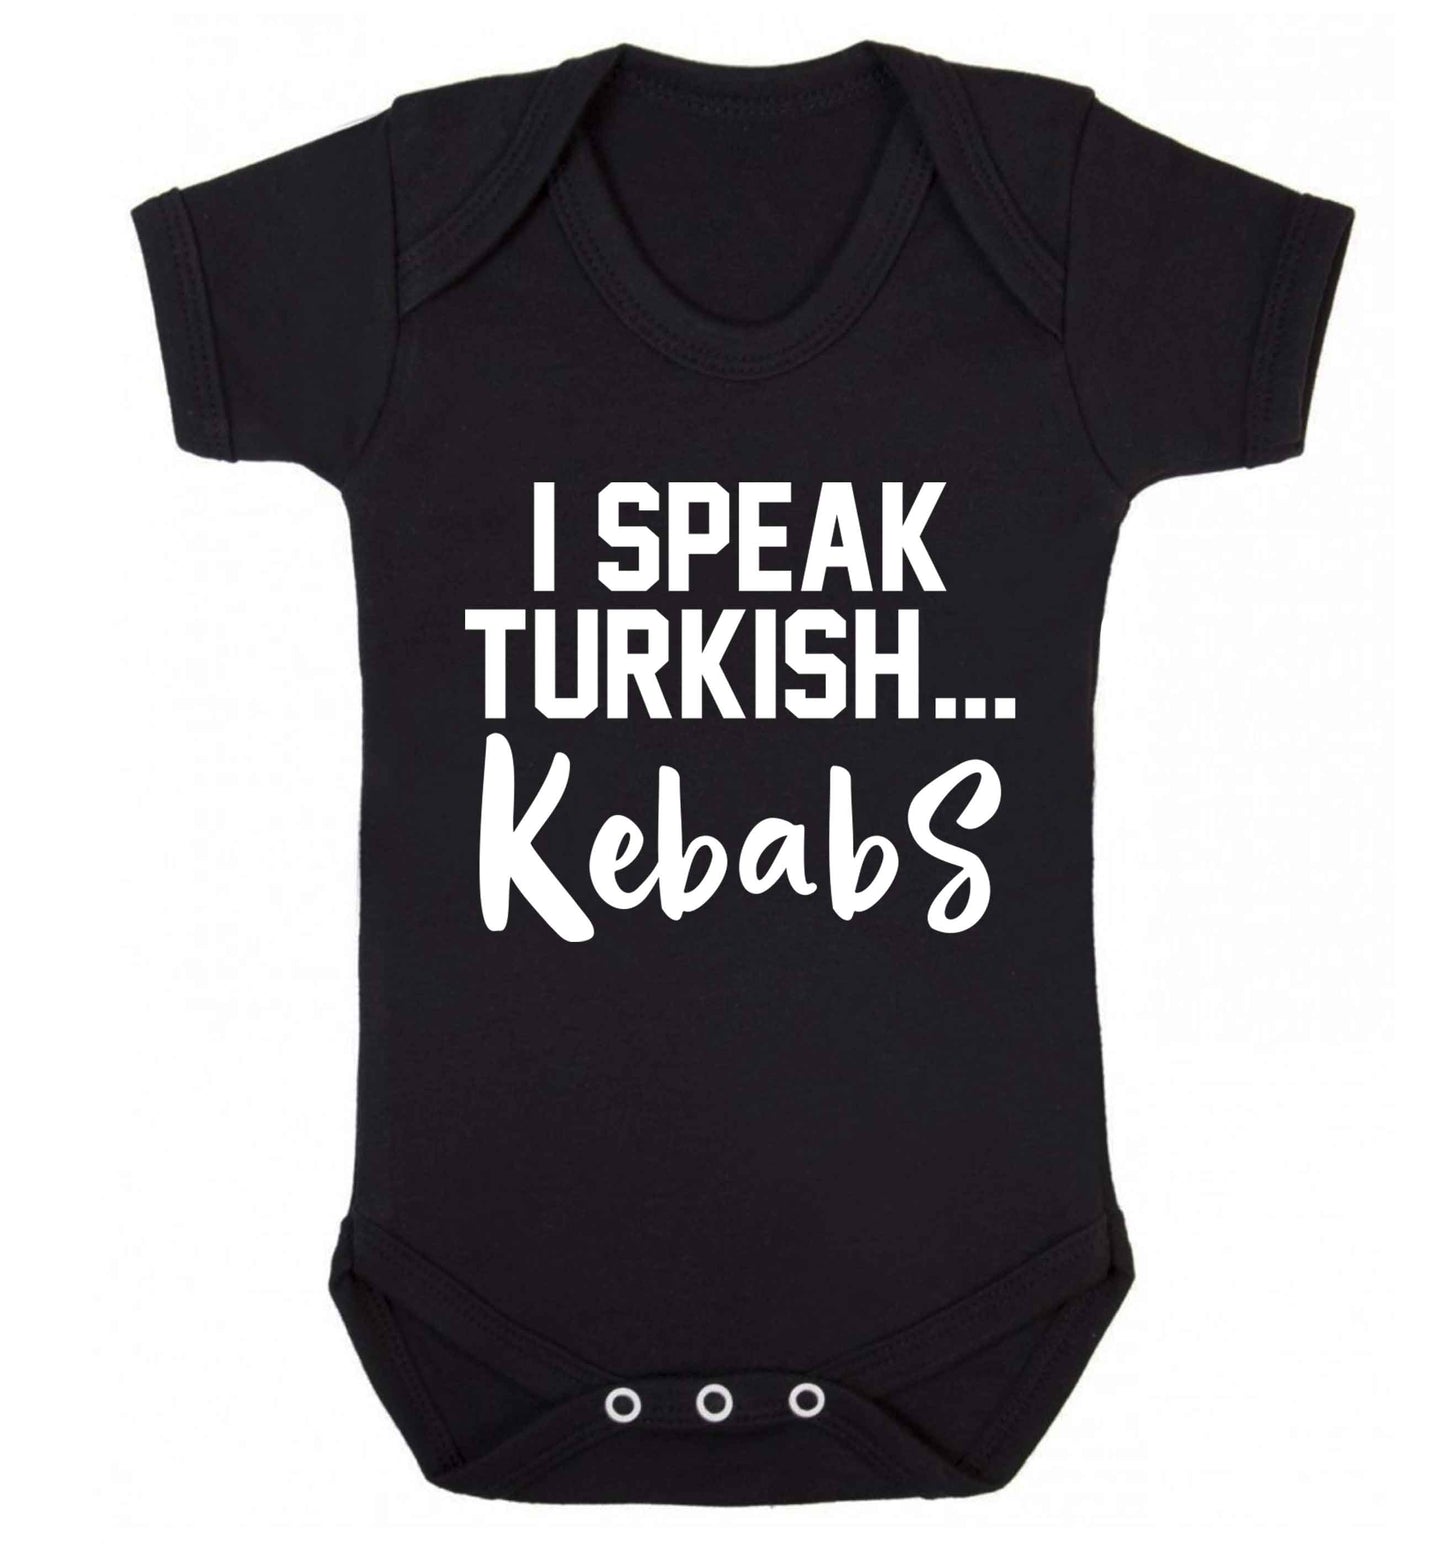 I speak Turkish...kebabs Baby Vest black 18-24 months